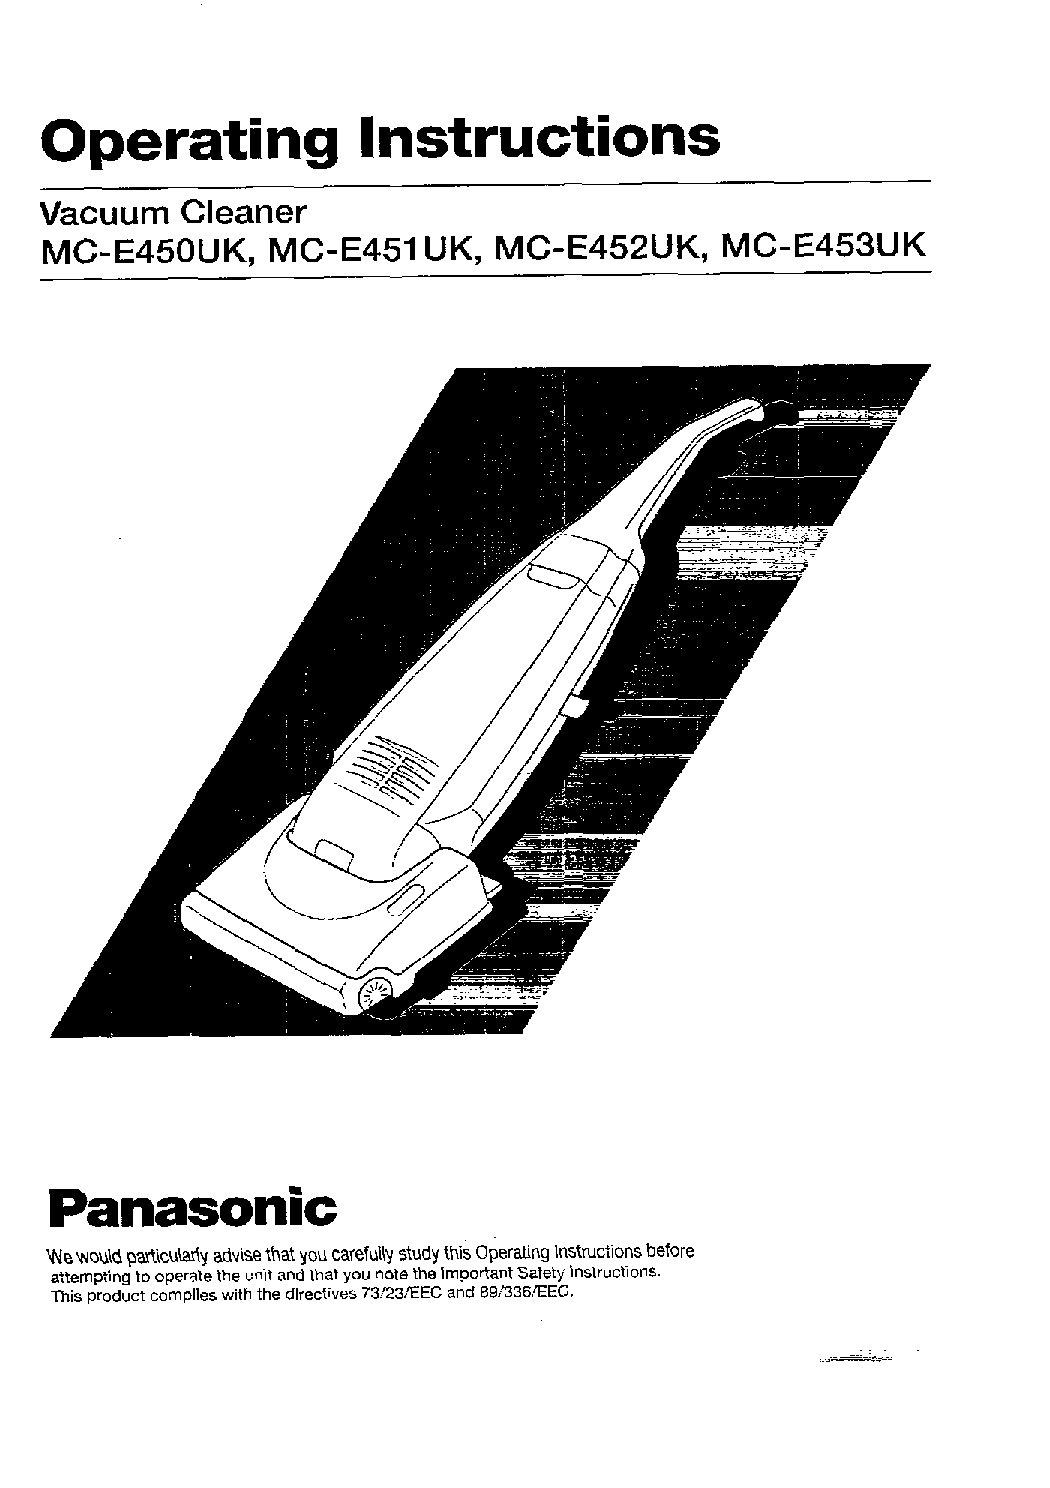 Panasonic MC-E453UK, MC-E452UK, MC-E451UK, MC-E450UK User Manual